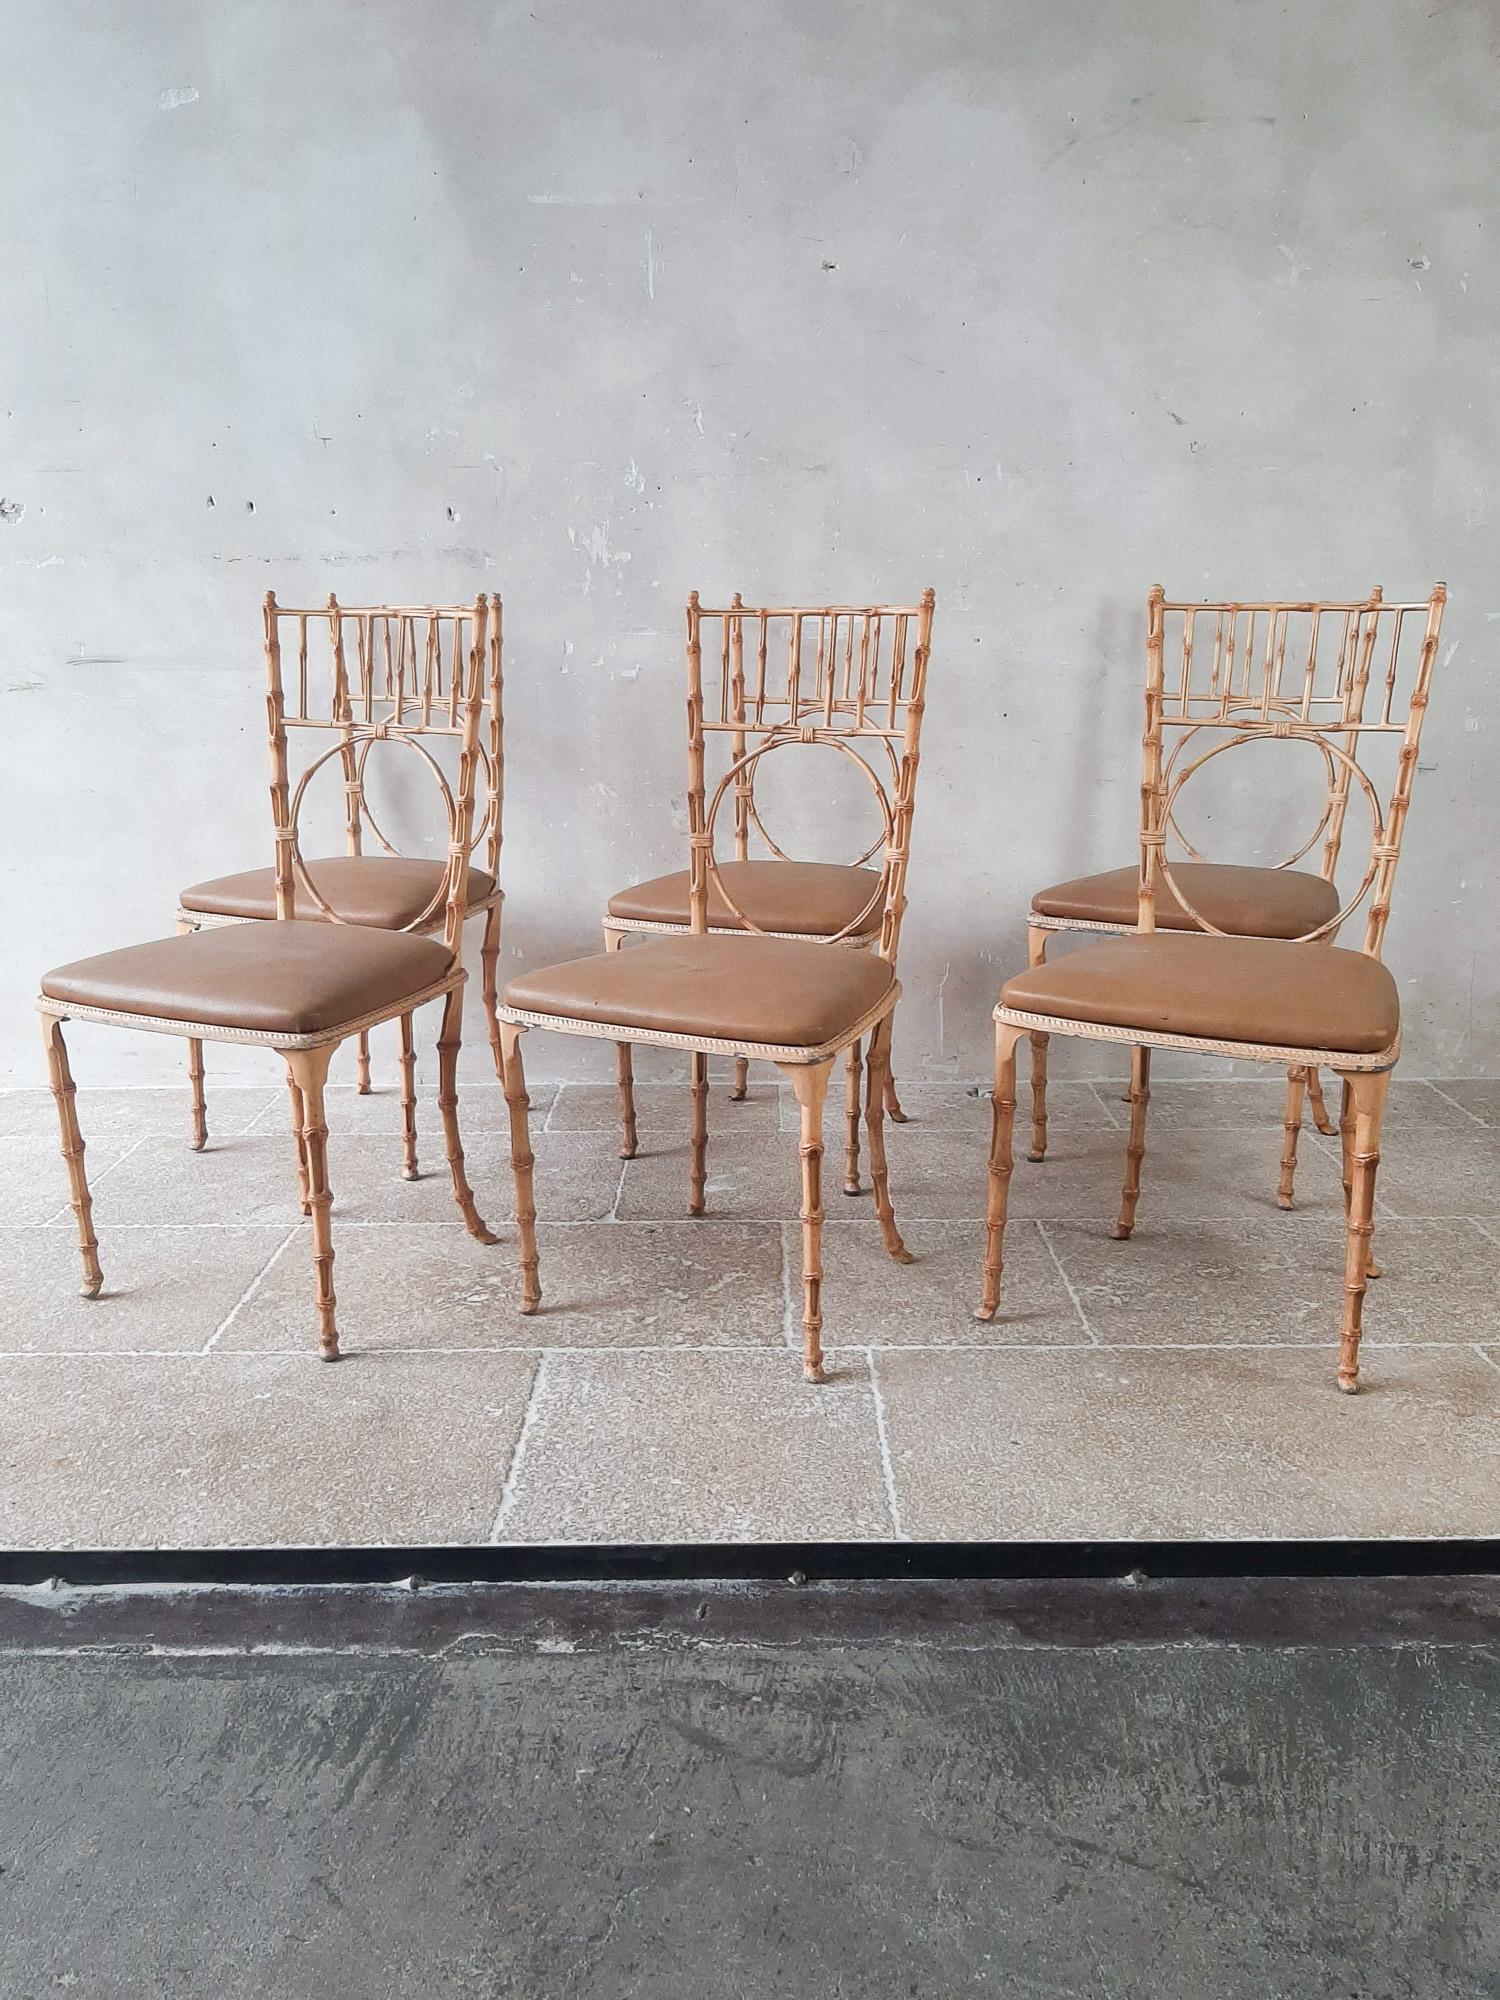 Un ensemble de 6 chaises de salle à manger en aluminium peint en faux bambou, datant des années 1950, avec revêtement original en skaï brun cognac.

Style chinois -Chippendale, style Hollywood Regency

Mesures : H 88 x L 44 x P 40 cm
hauteur du